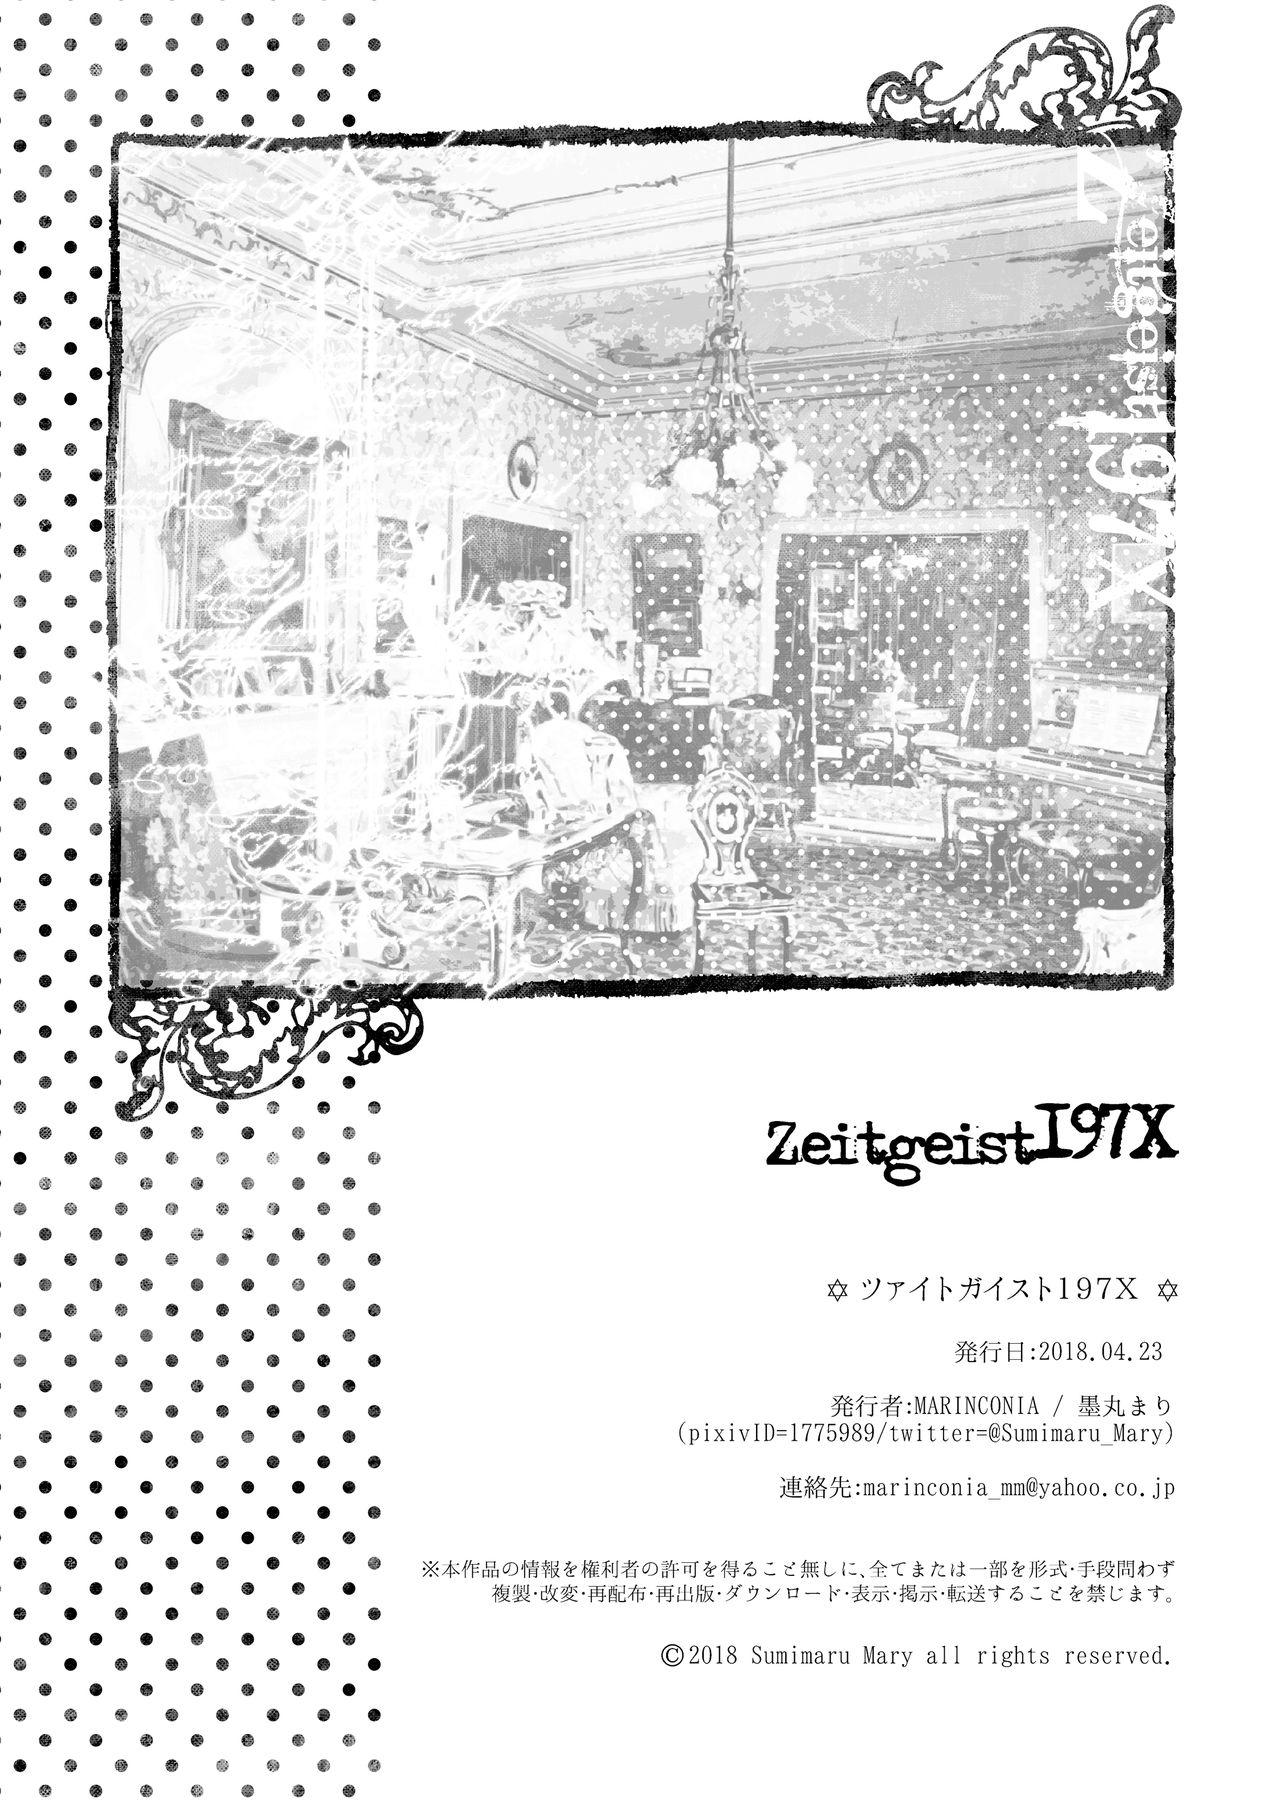 Zeitgeist197X | 时代精神197X 51